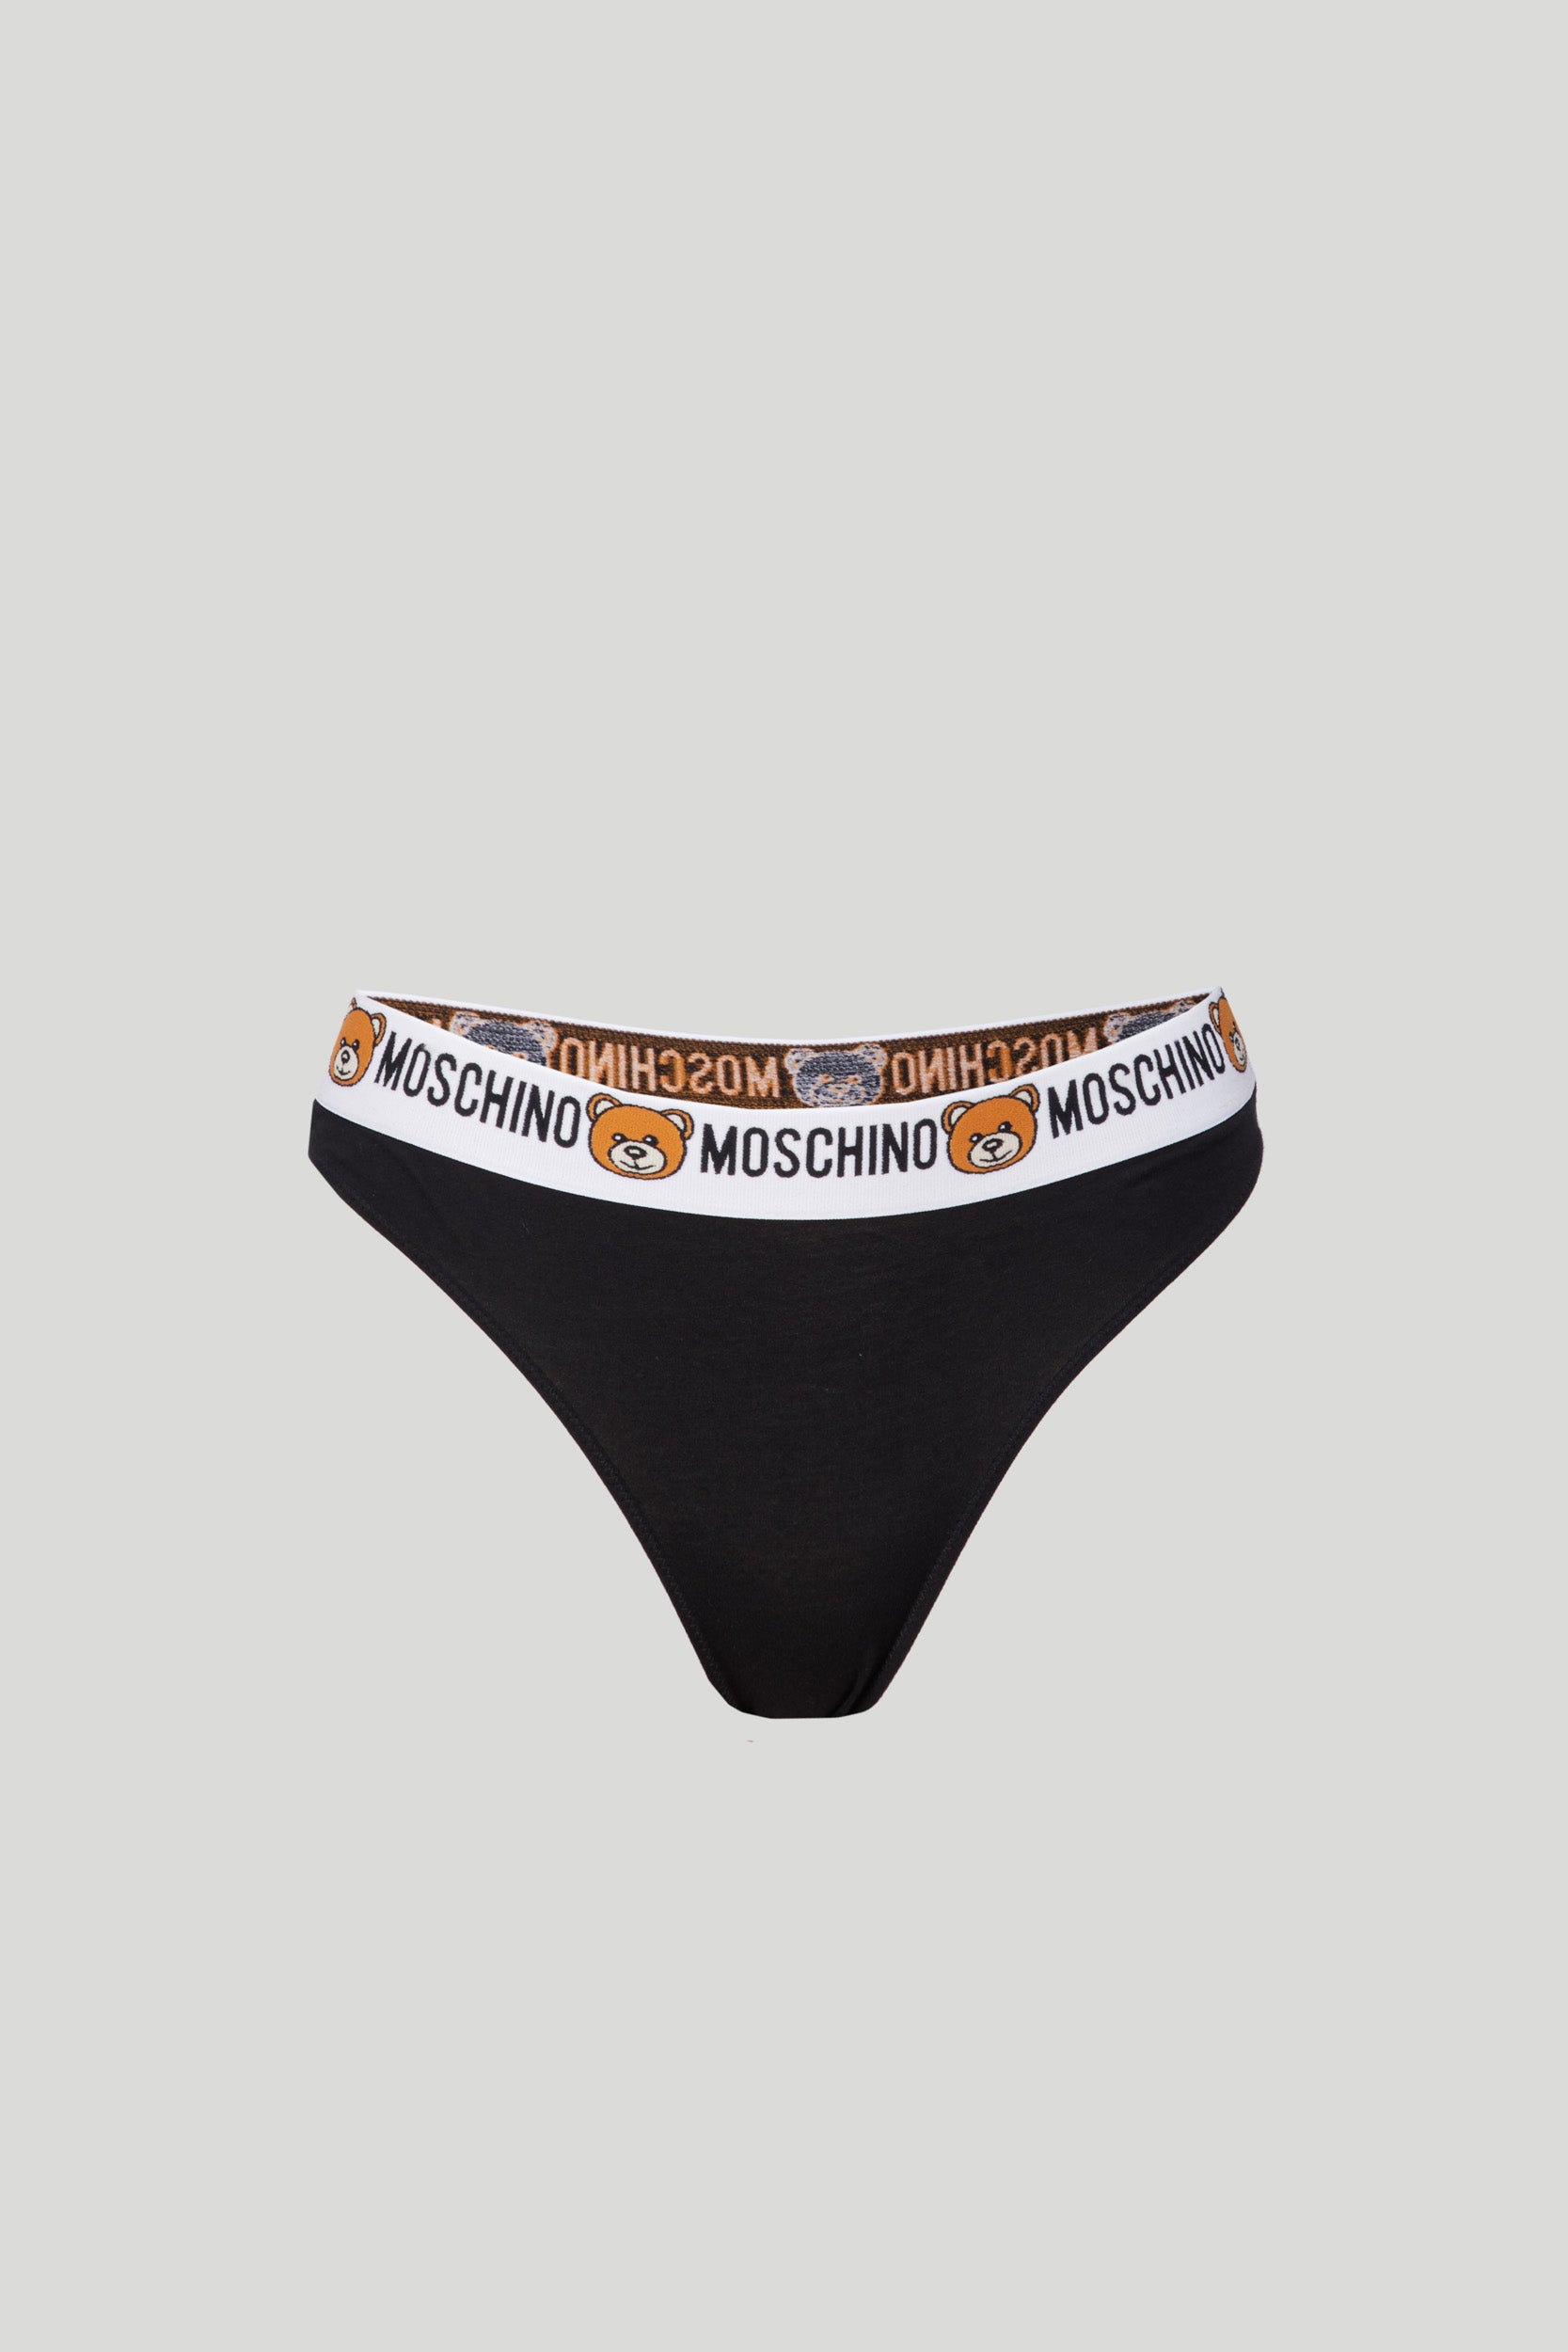 MOSCHINO Schwarzer Slip mit Moschino-Logo und Teddy